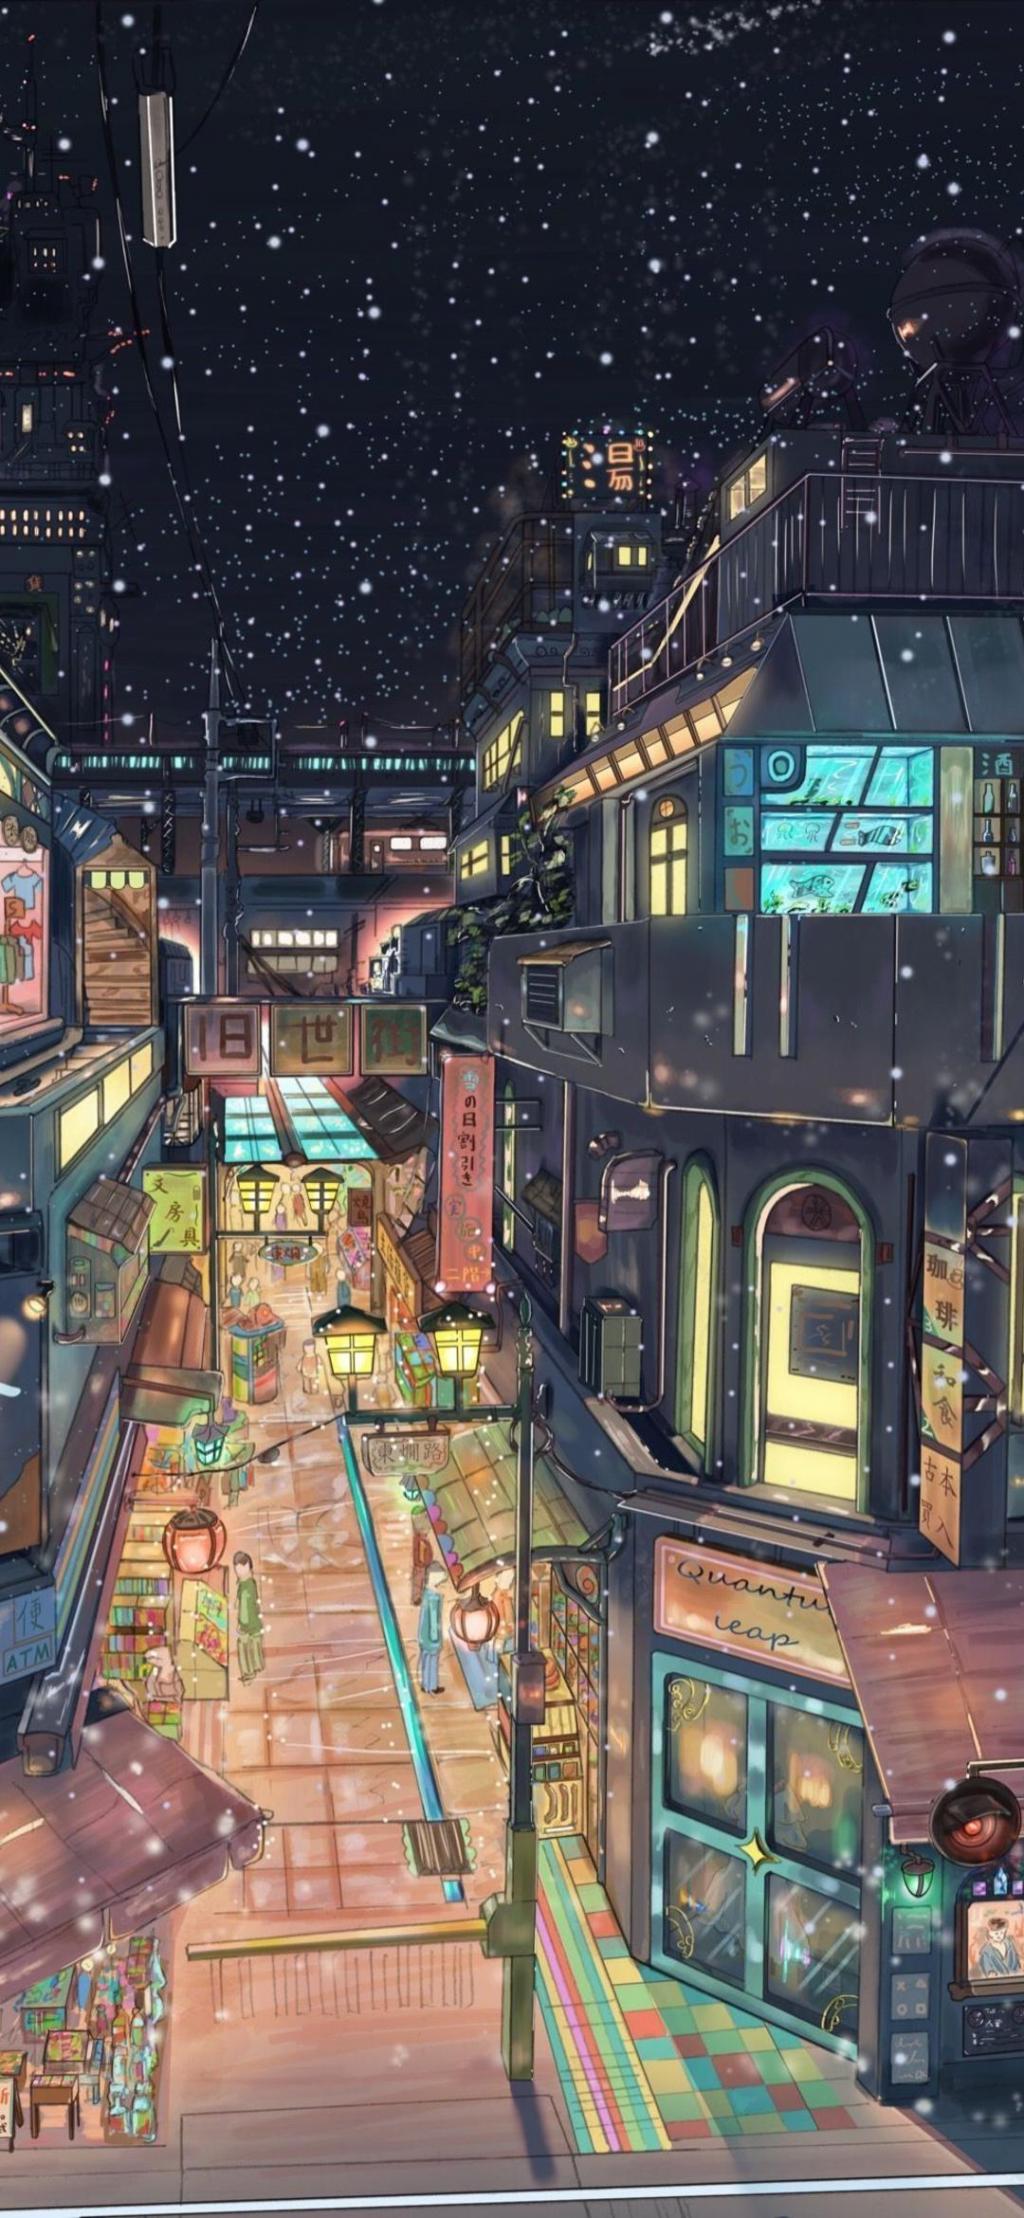 アニメの世界繁華街 デスデスロック画面マップおサーキュラー壁紙 携帯電話の壁紙 壁紙